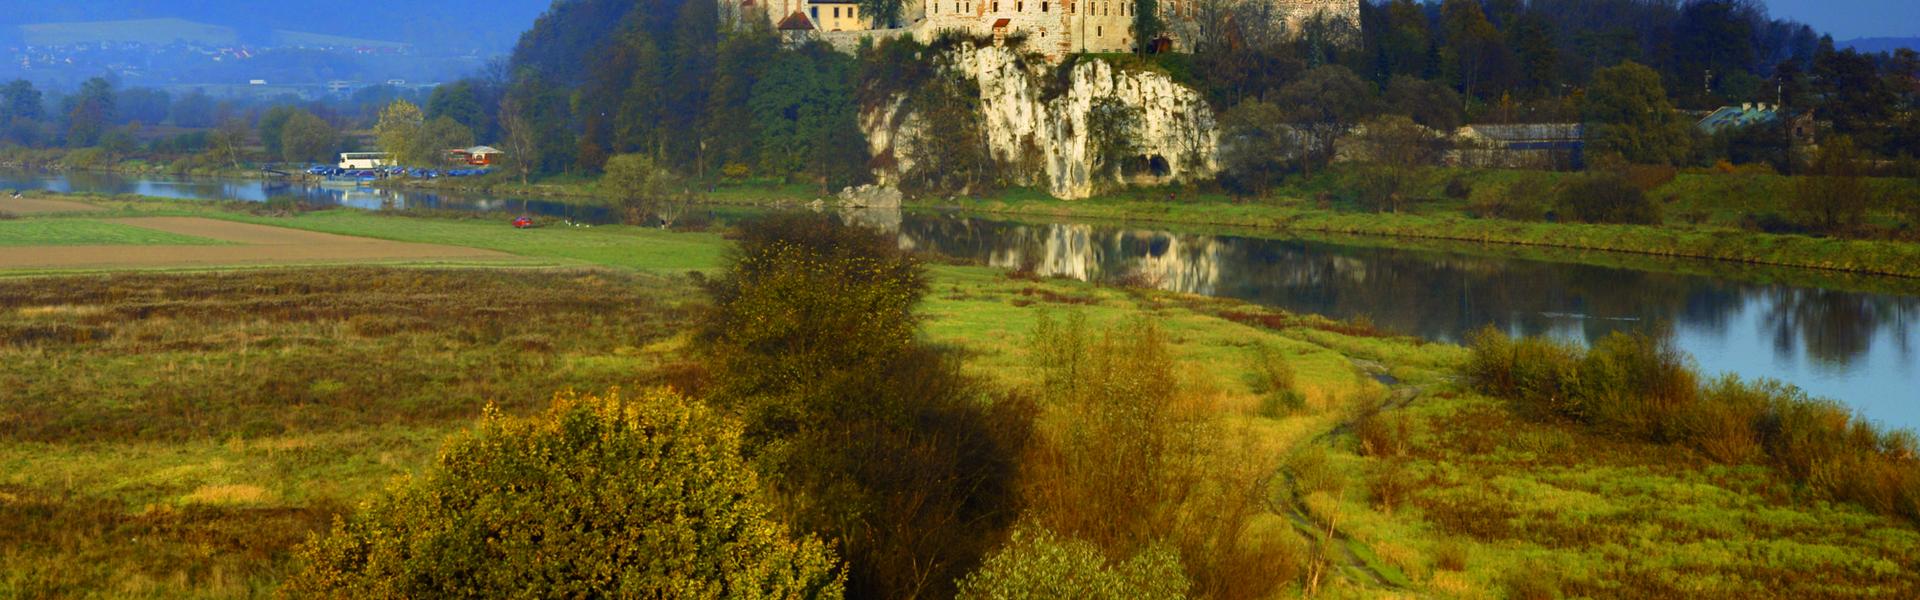 Biały klasztor na wzgórzu nad rzeką.